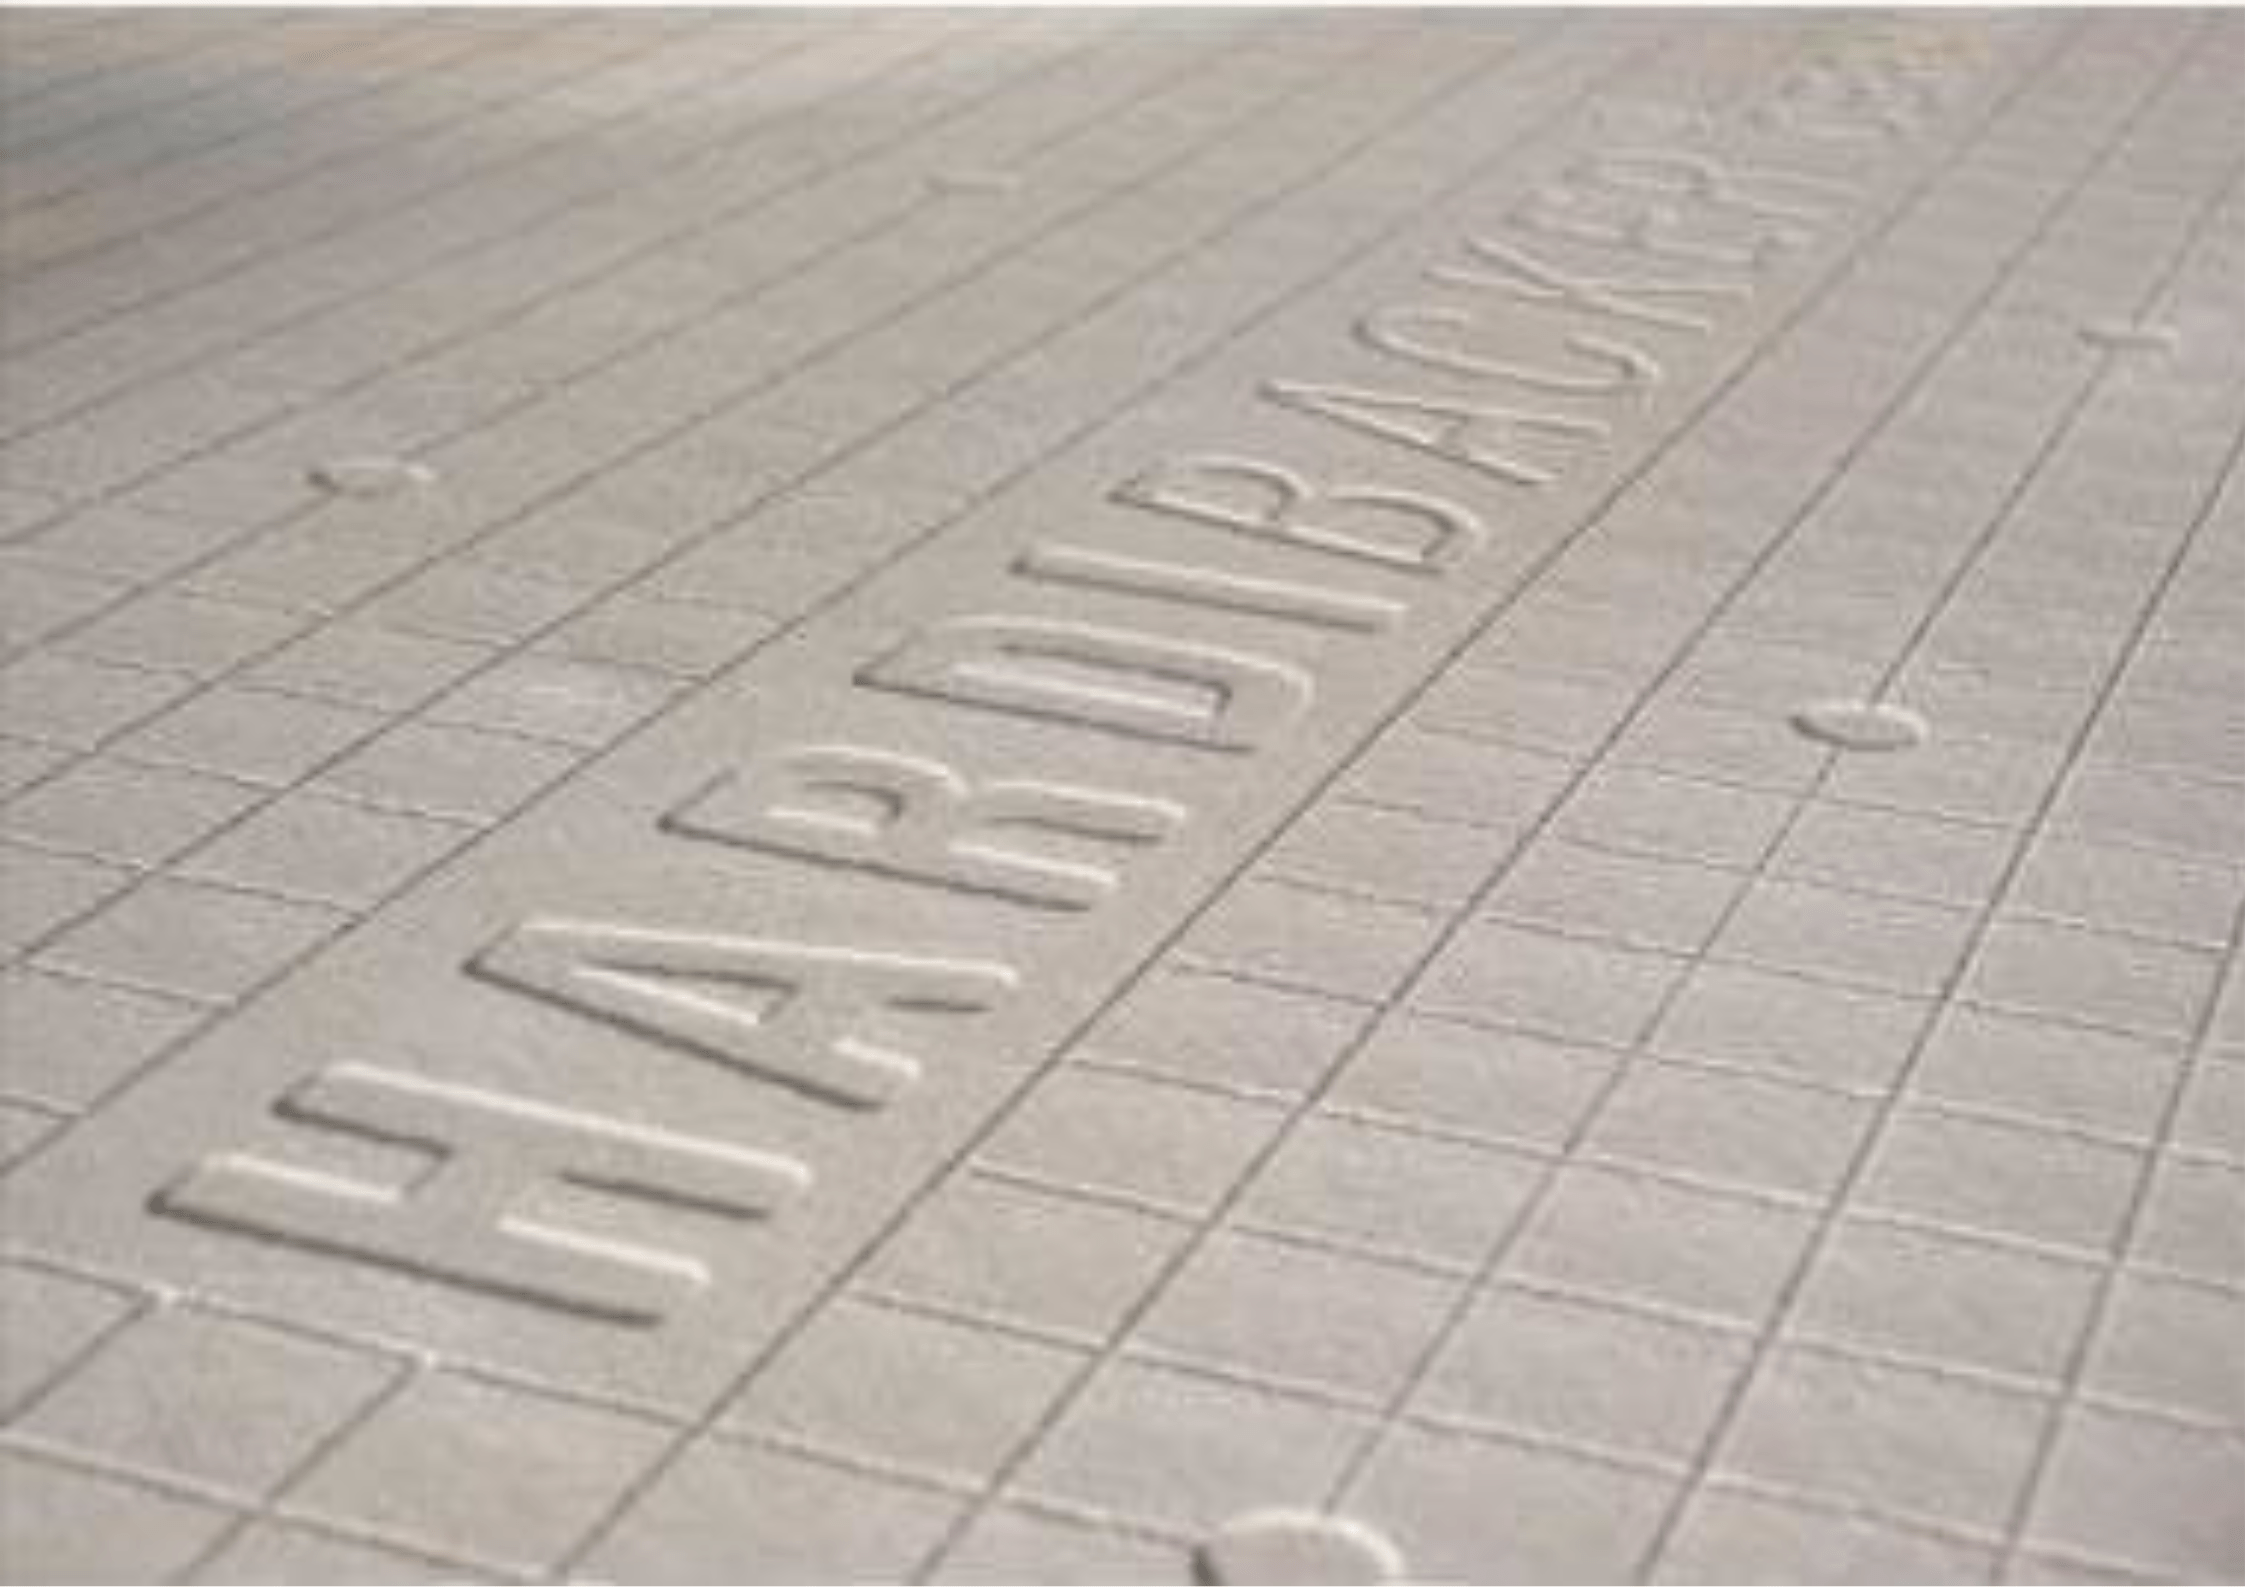 James Hardie Hardie® Backer Tile Backerboard 1200mm x 800mm x 6mm - Half Pallet of 45 IUK01643 Hardie® Backer Tile Backerboard 1200mm x 800mm x 6mm - Half Pallet of 45 | insulationuk.co.uk